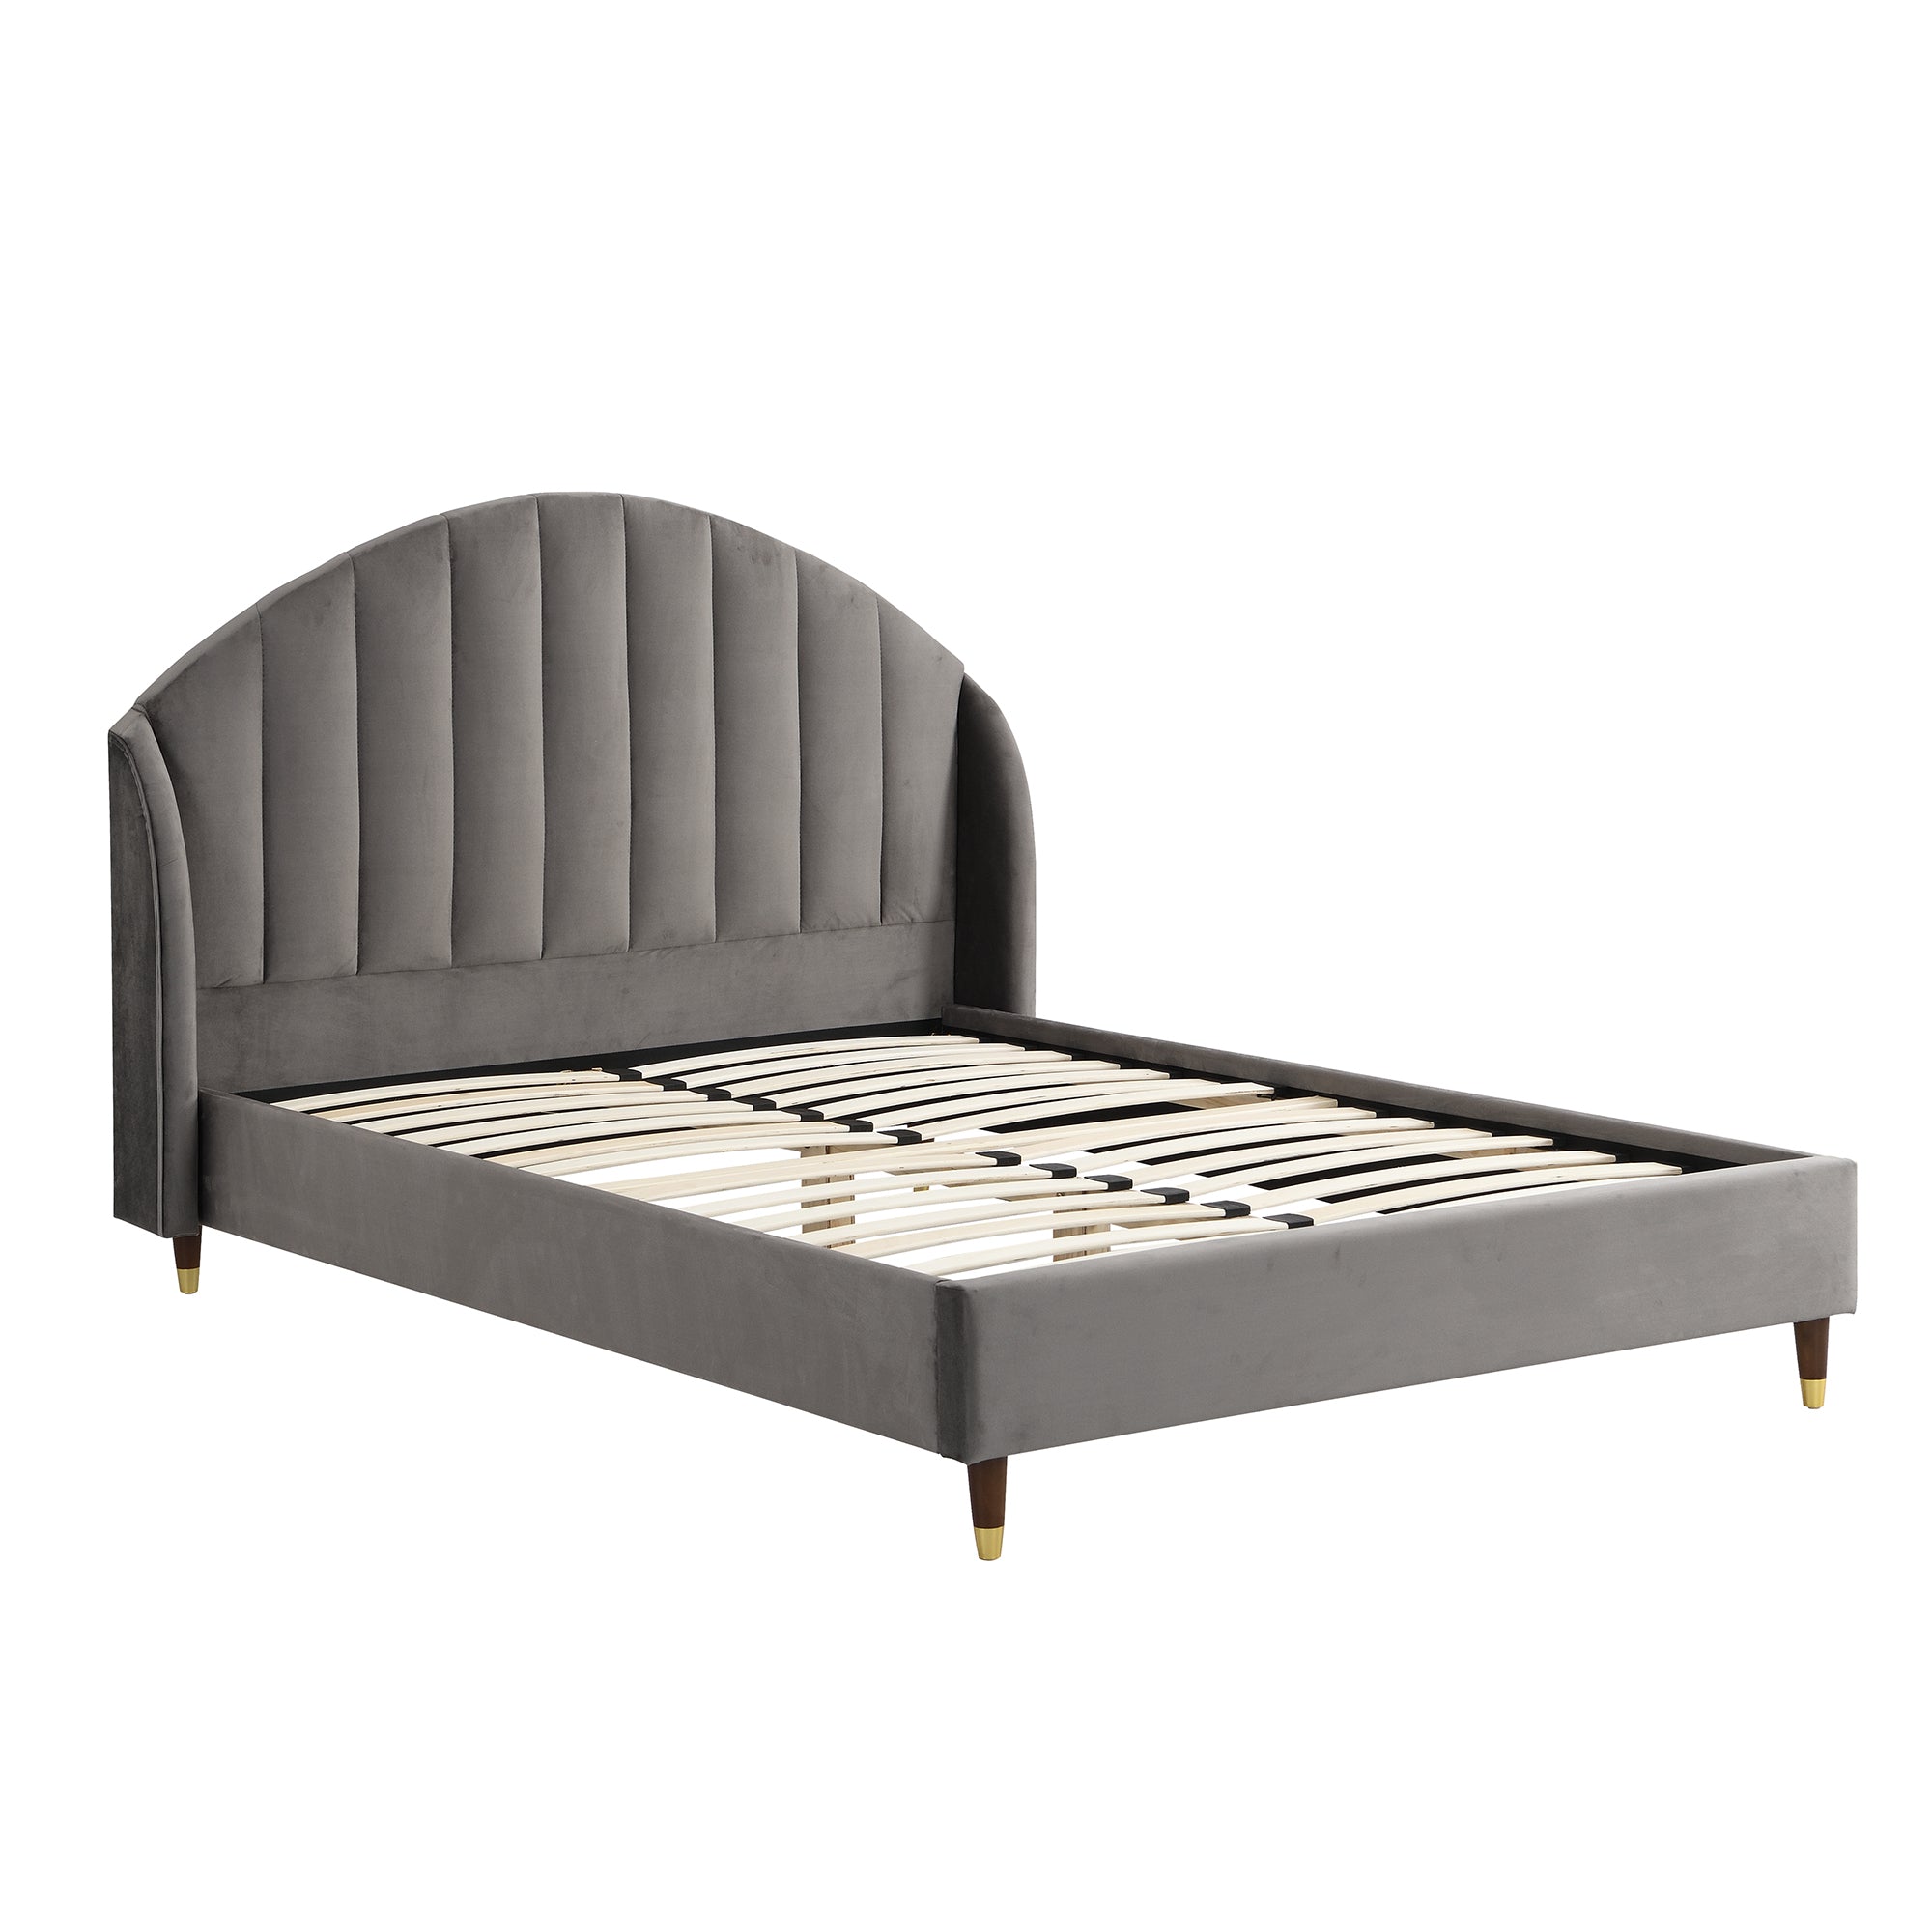 Eleanor Grey Velvet Upholstered Bed Frame with Domed Headboard